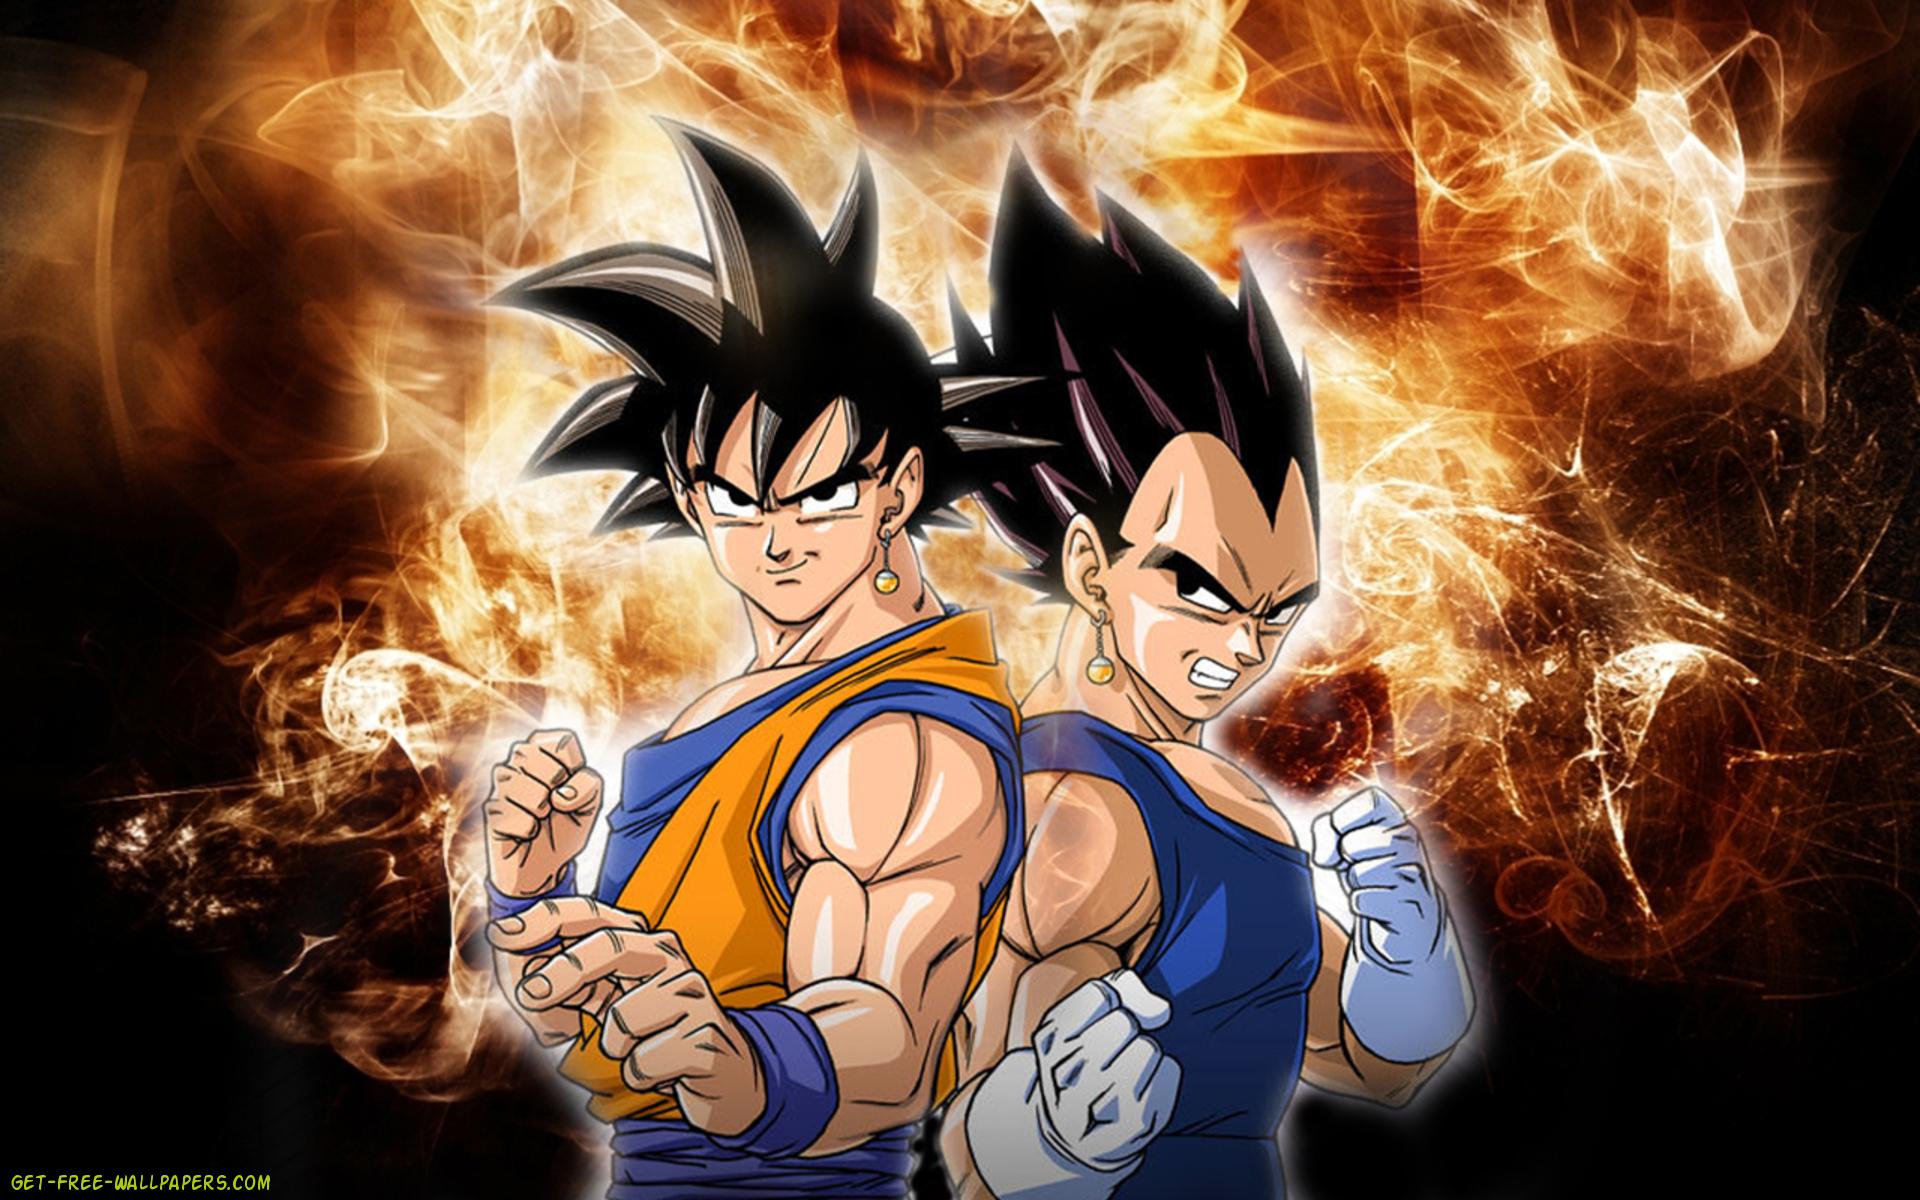 Goku và Vegeta là hai nhân vật phong cách và đầy sức mạnh trong bộ anime Dragon Ball. Nếu bạn là fan của hai nhân vật này, hãy thử tải ngay hình nền Goku và Vegeta trên WallpaperDog để trang trí điện thoại của mình. Thiết kế độc đáo sẽ khiến bạn cảm thấy tràn đầy sức sống và năng lượng!